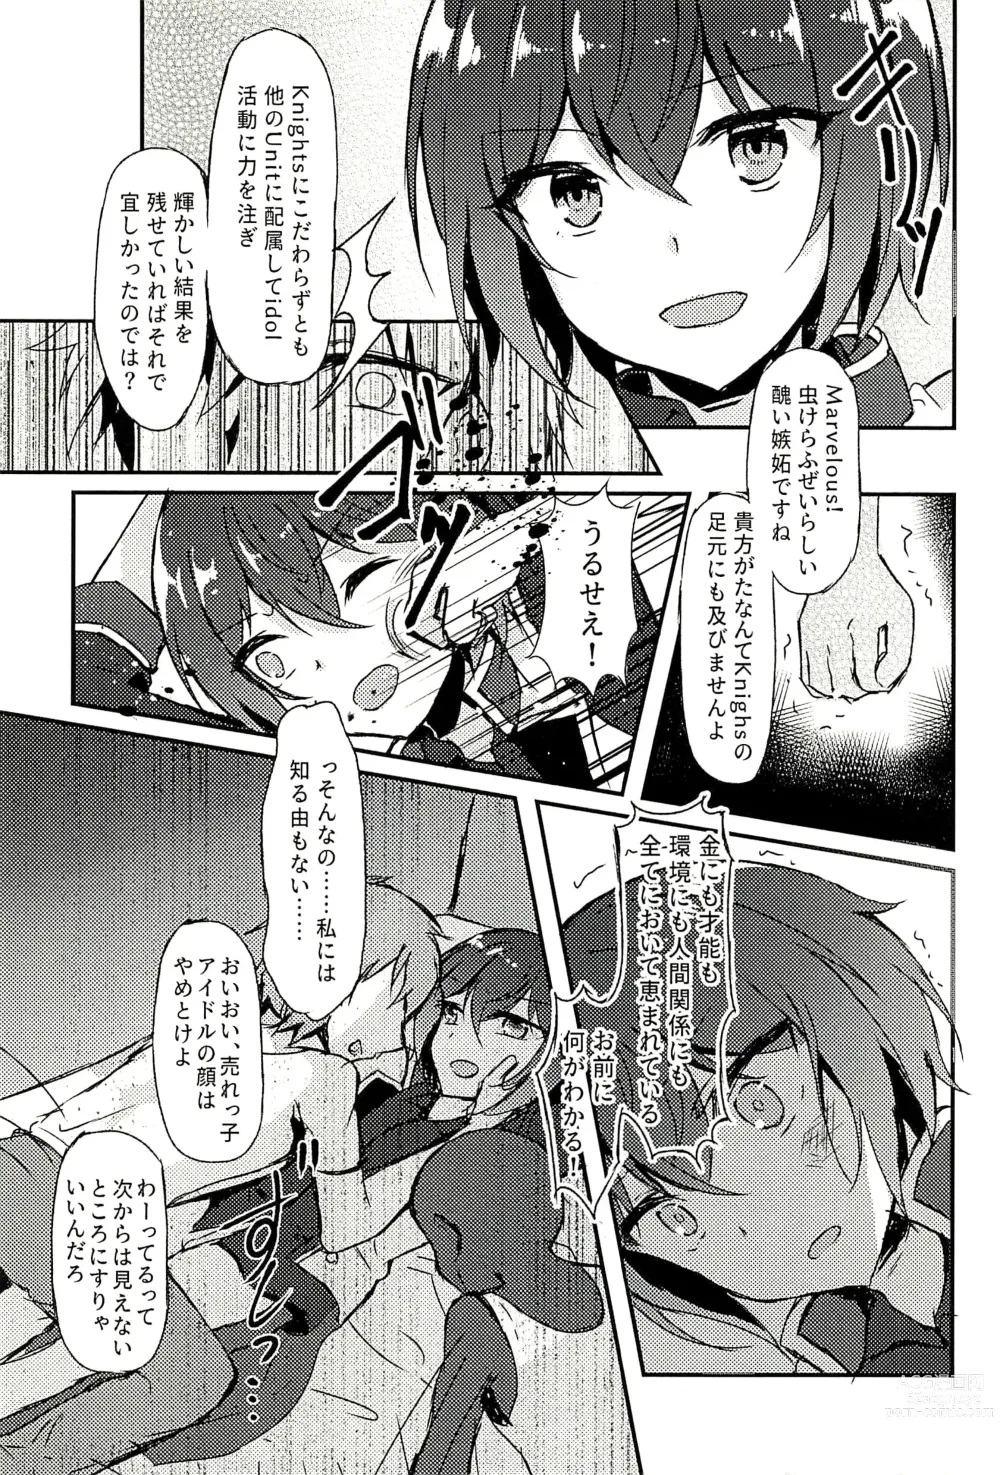 Page 11 of doujinshi Junketsu no Requiem